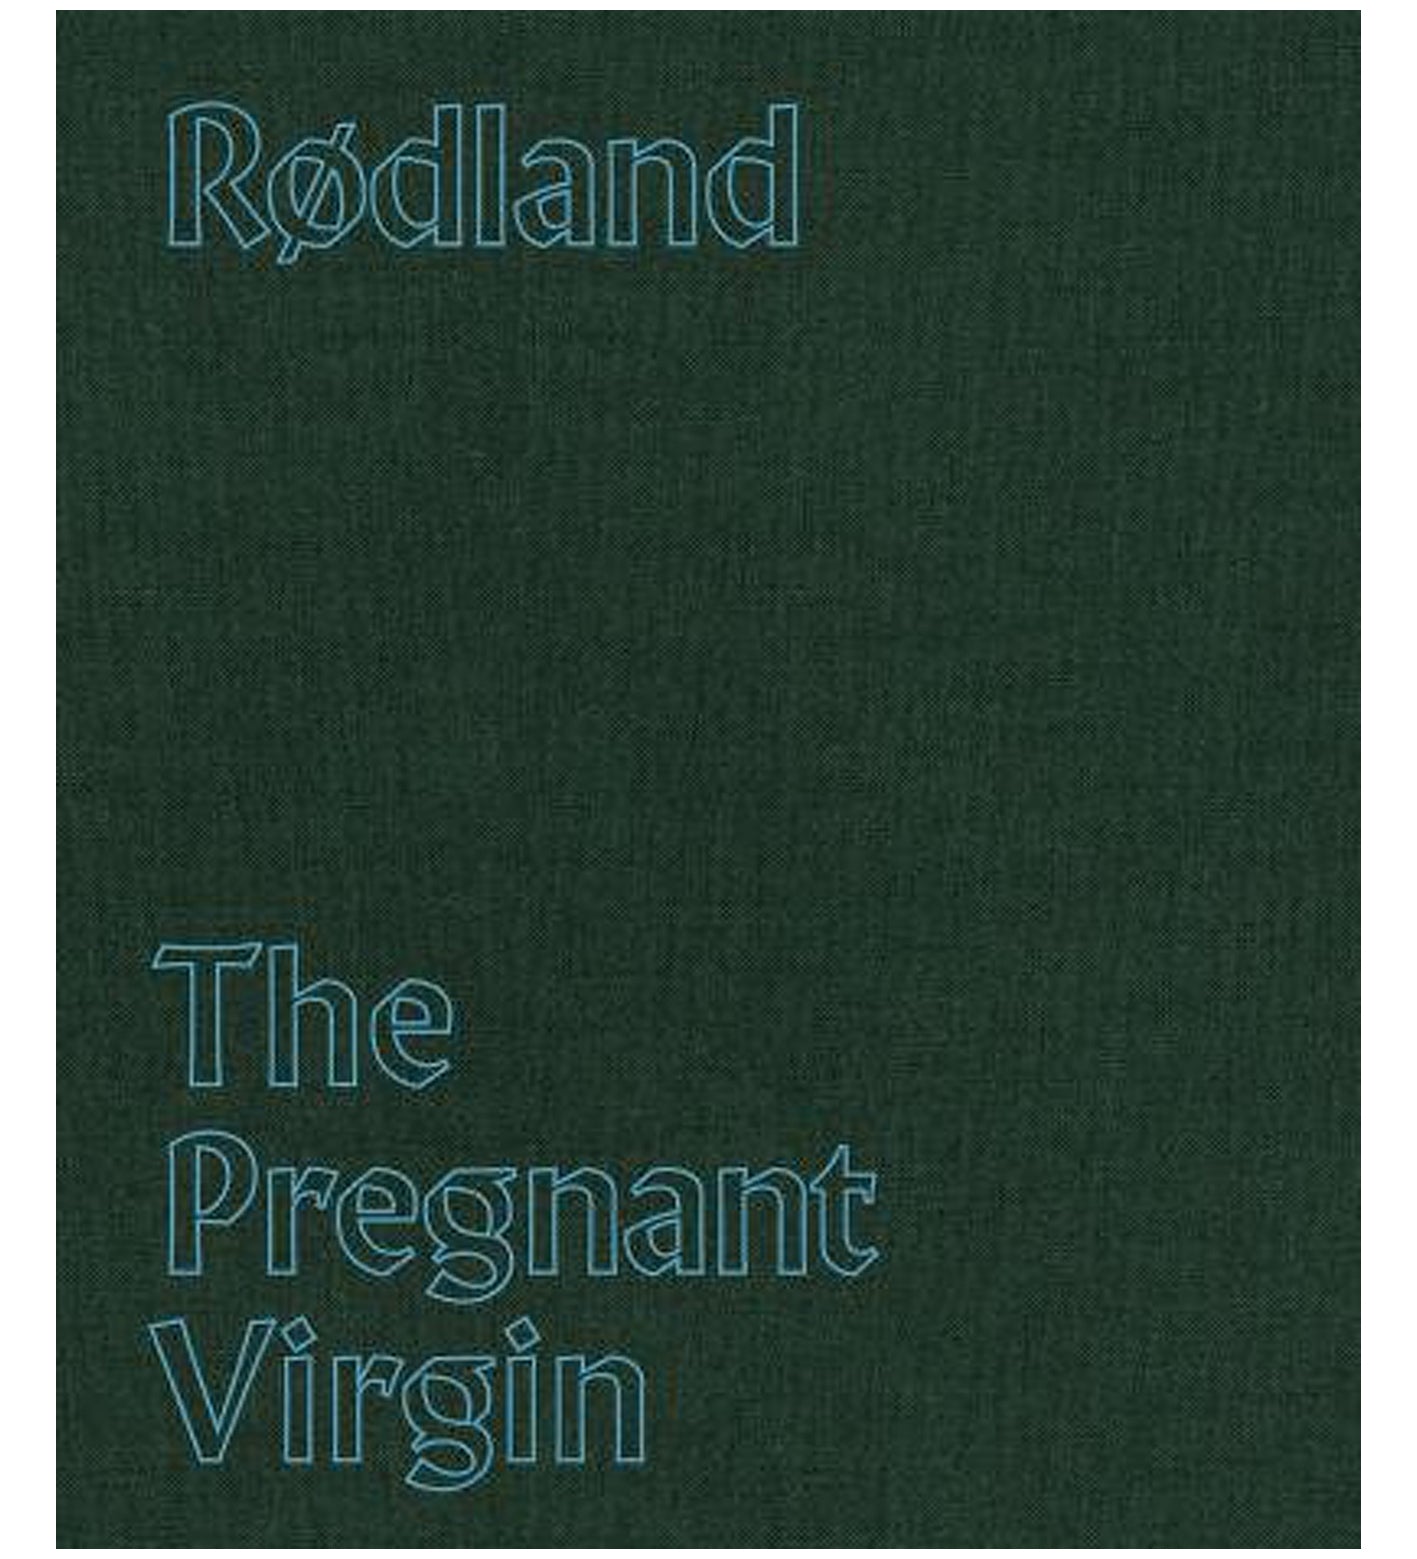 Torbjørn Rødland: The Pregnant Virgin (Signed)